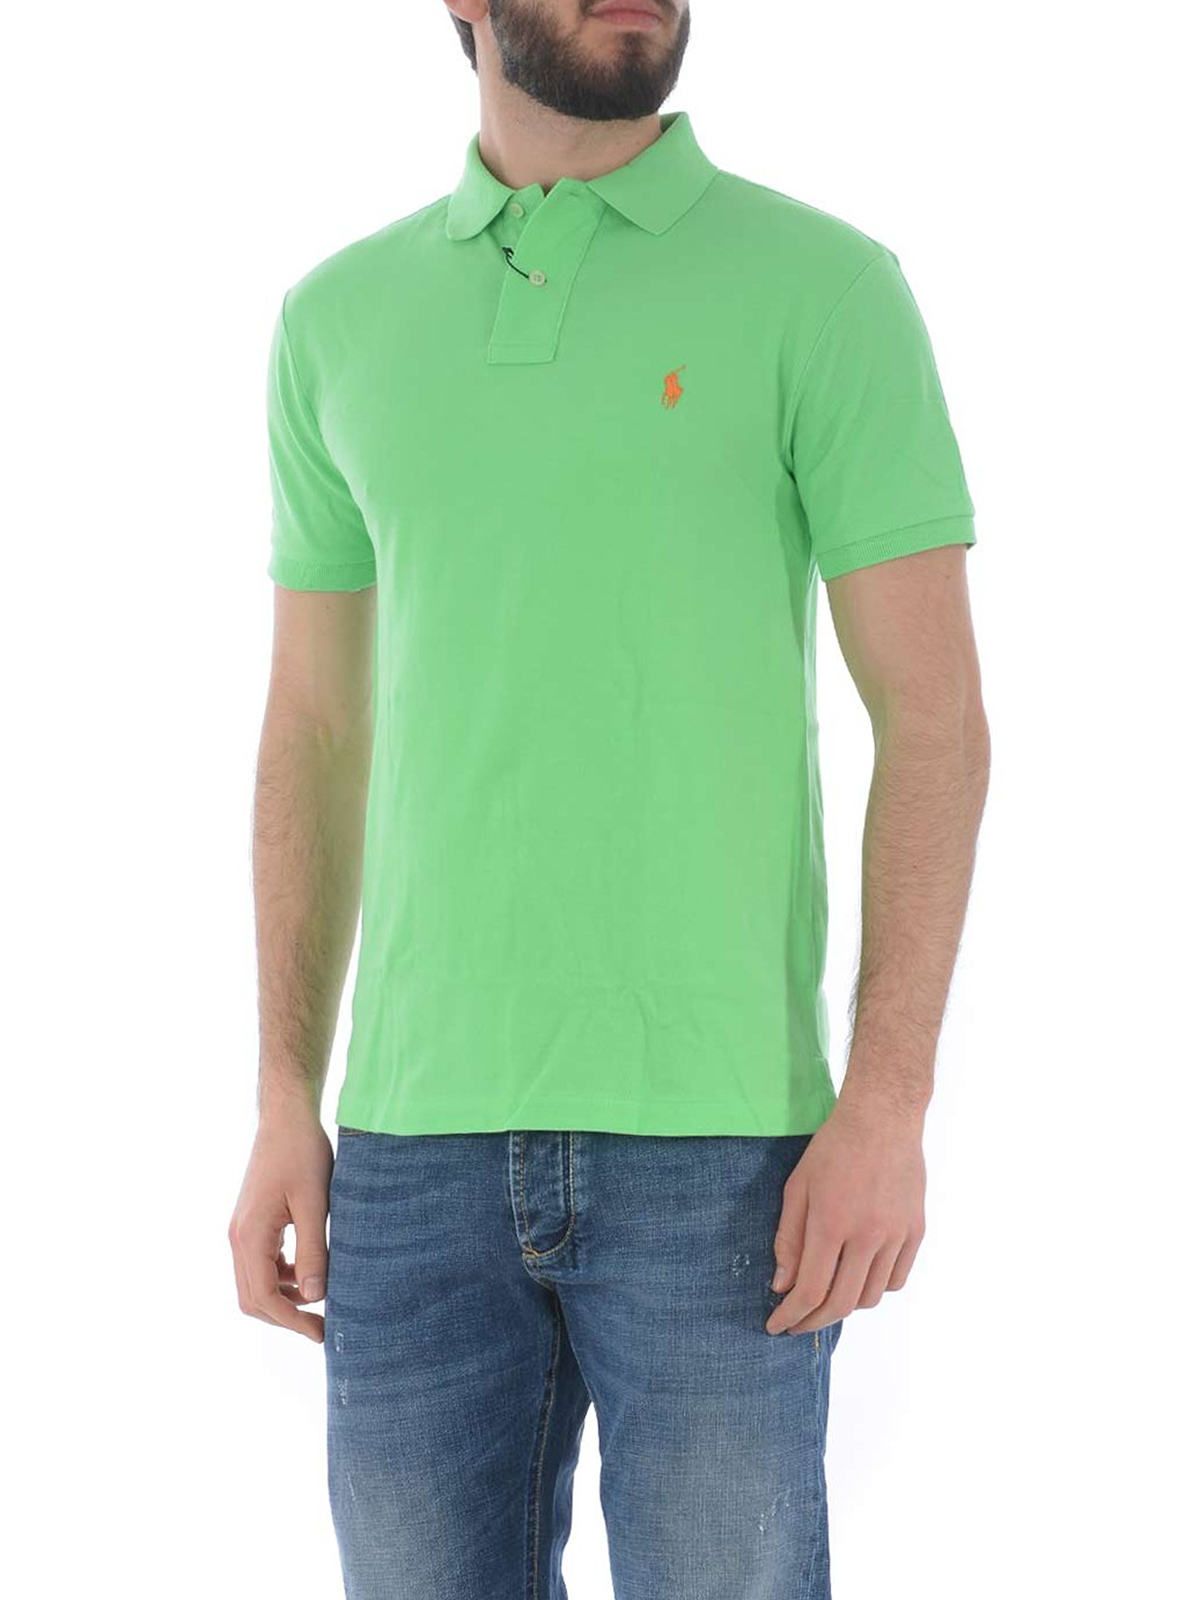 Ochtend Storen aankomst Polo shirts Polo Ralph Lauren - Light green pique cotton polo shirt -  536856161